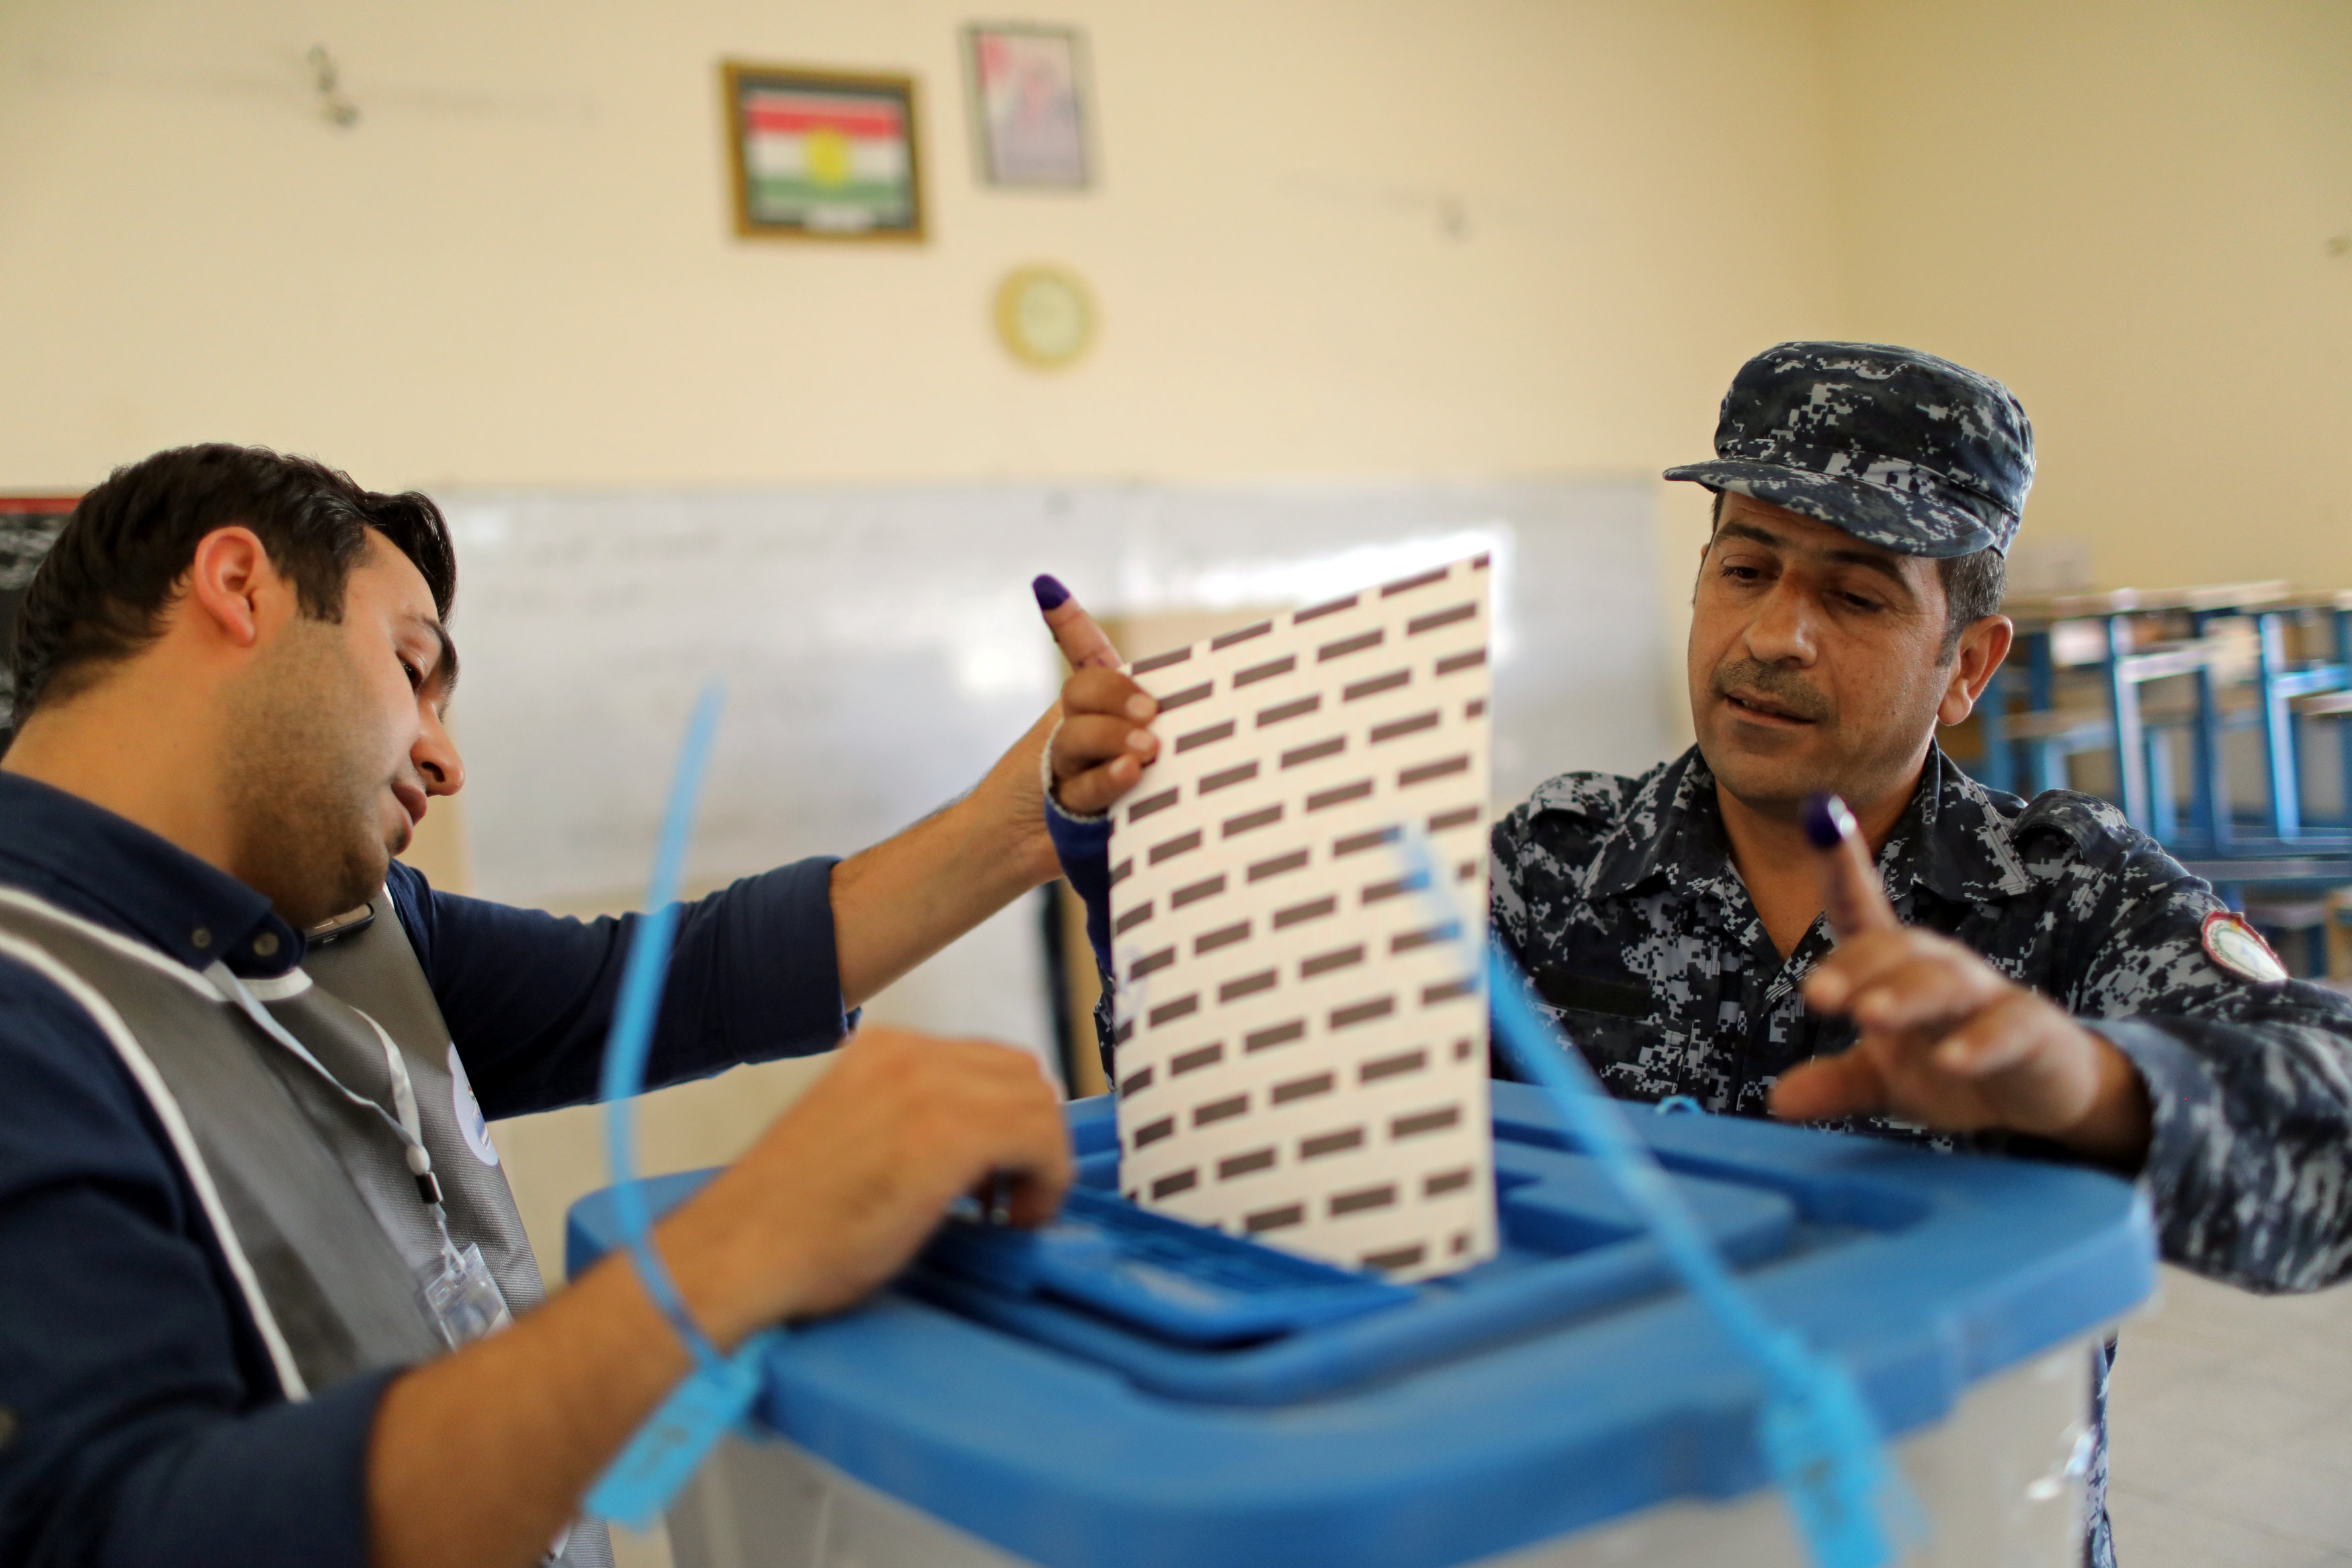 عضو في قوات الأمن الكردية يدلي بصوته  قبل يومين من فتح باب التصويت في الانتخابات البرلمانية